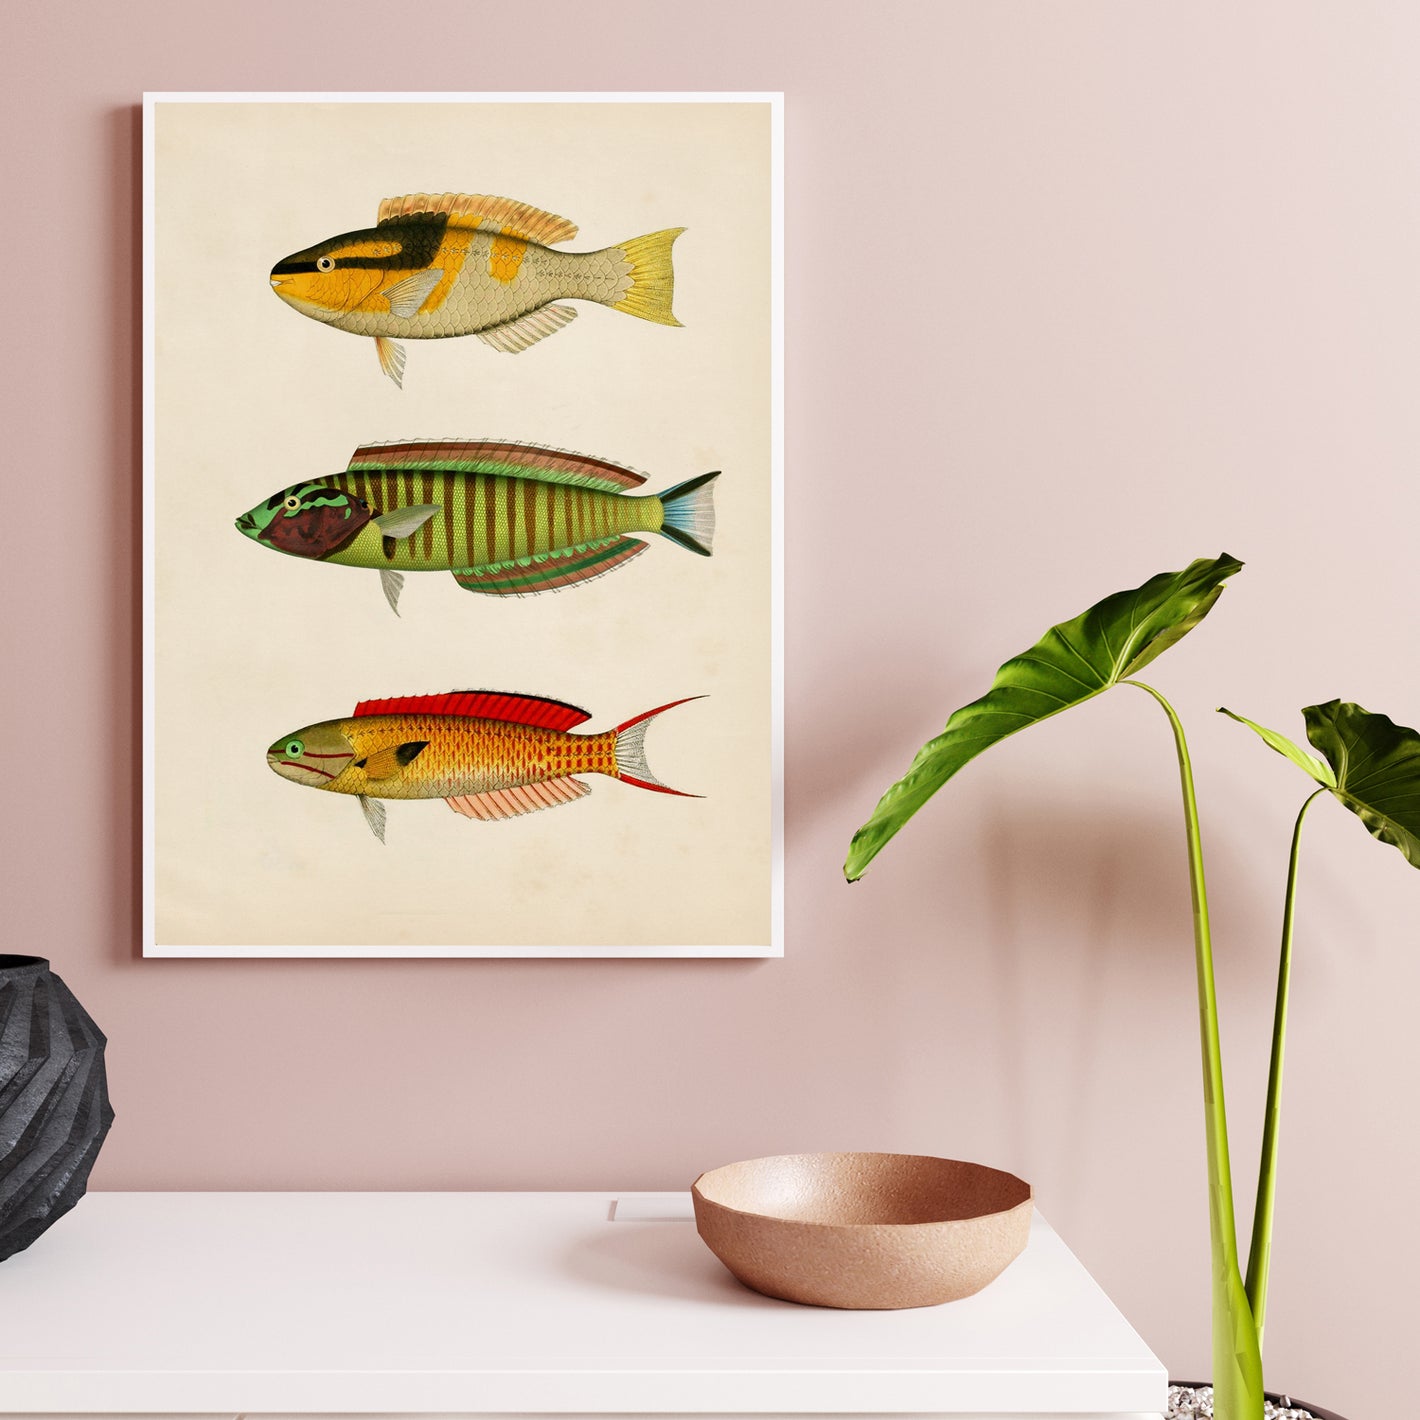 La imagen muestra una composición de láminas decorativas con peces en efecto vintage y papel sepia. Los peces son variados y coloridos, y se presentan en diferentes tamaños y formas. Esta imagen es perfecta para los aficionados a la pesca y la fauna acuá